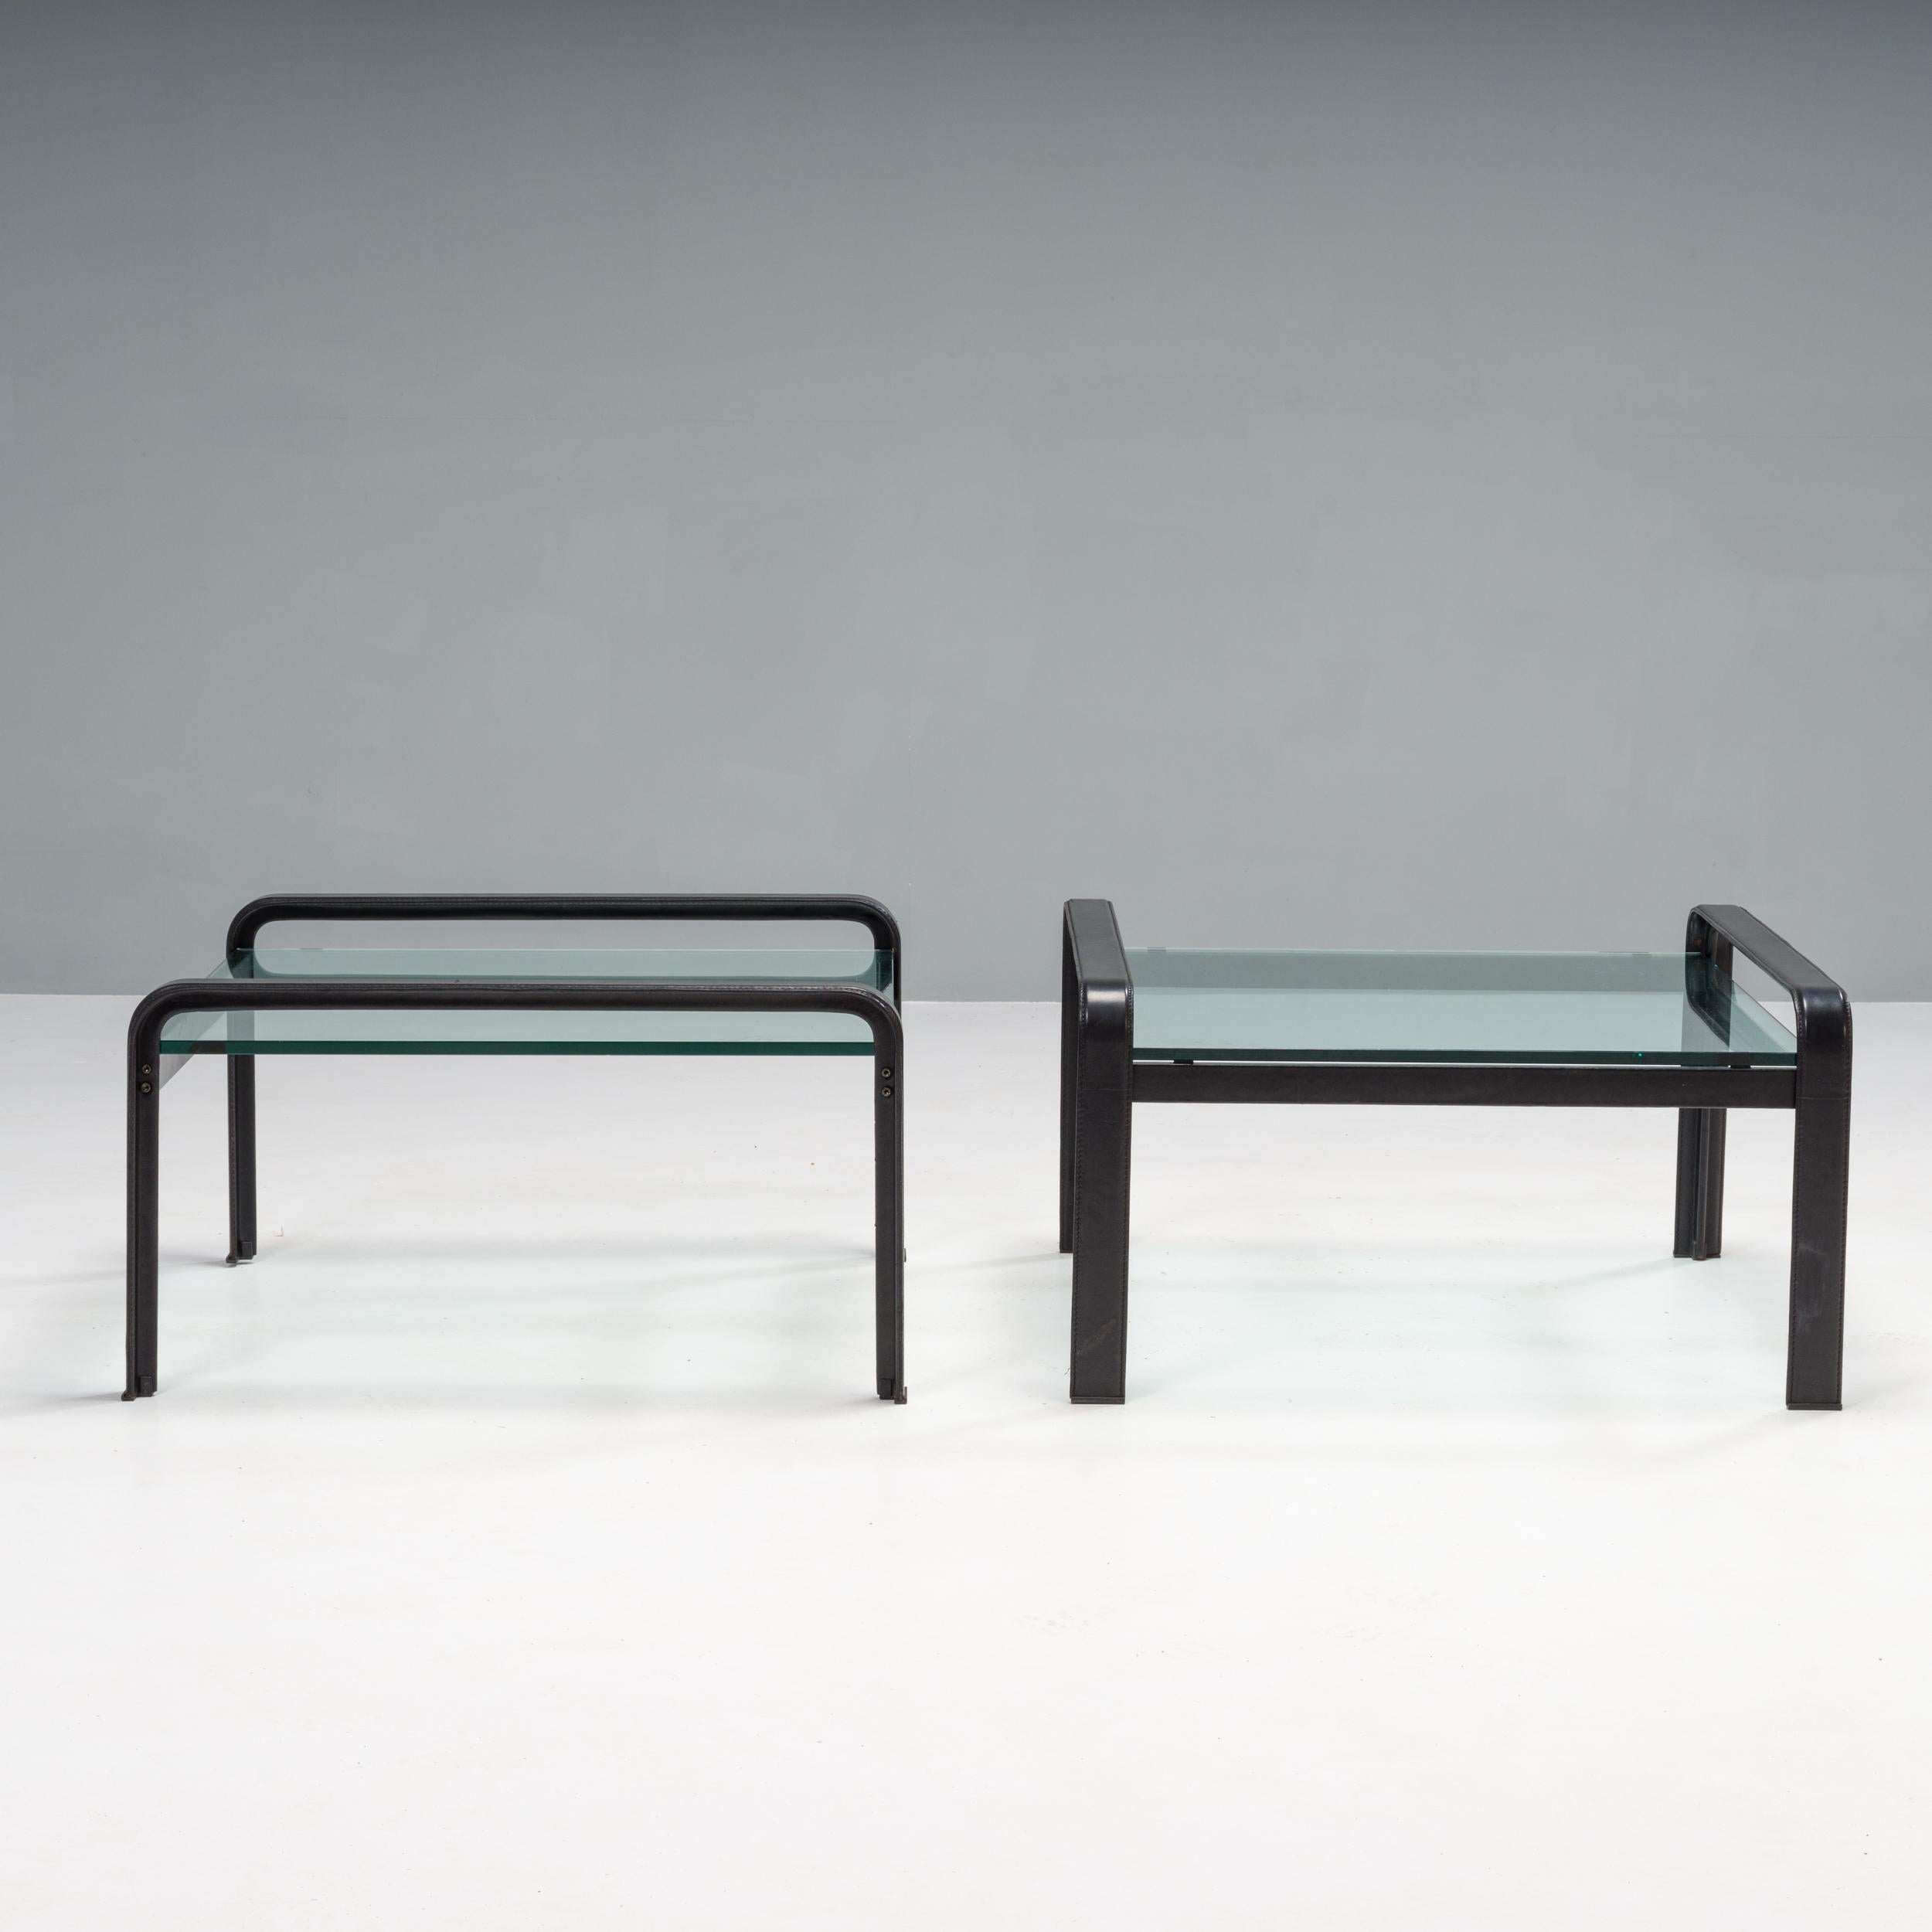 Dieses Beistelltisch-Set wurde in den 1970er Jahren von Tito Agnoli für Matteo Grassi entworfen und ist ein fantastisches Beispiel für italienisches Design aus der Mitte des Jahrhunderts.

Das Gestell des Tisches aus Stahl ist mit schwarzem Leder